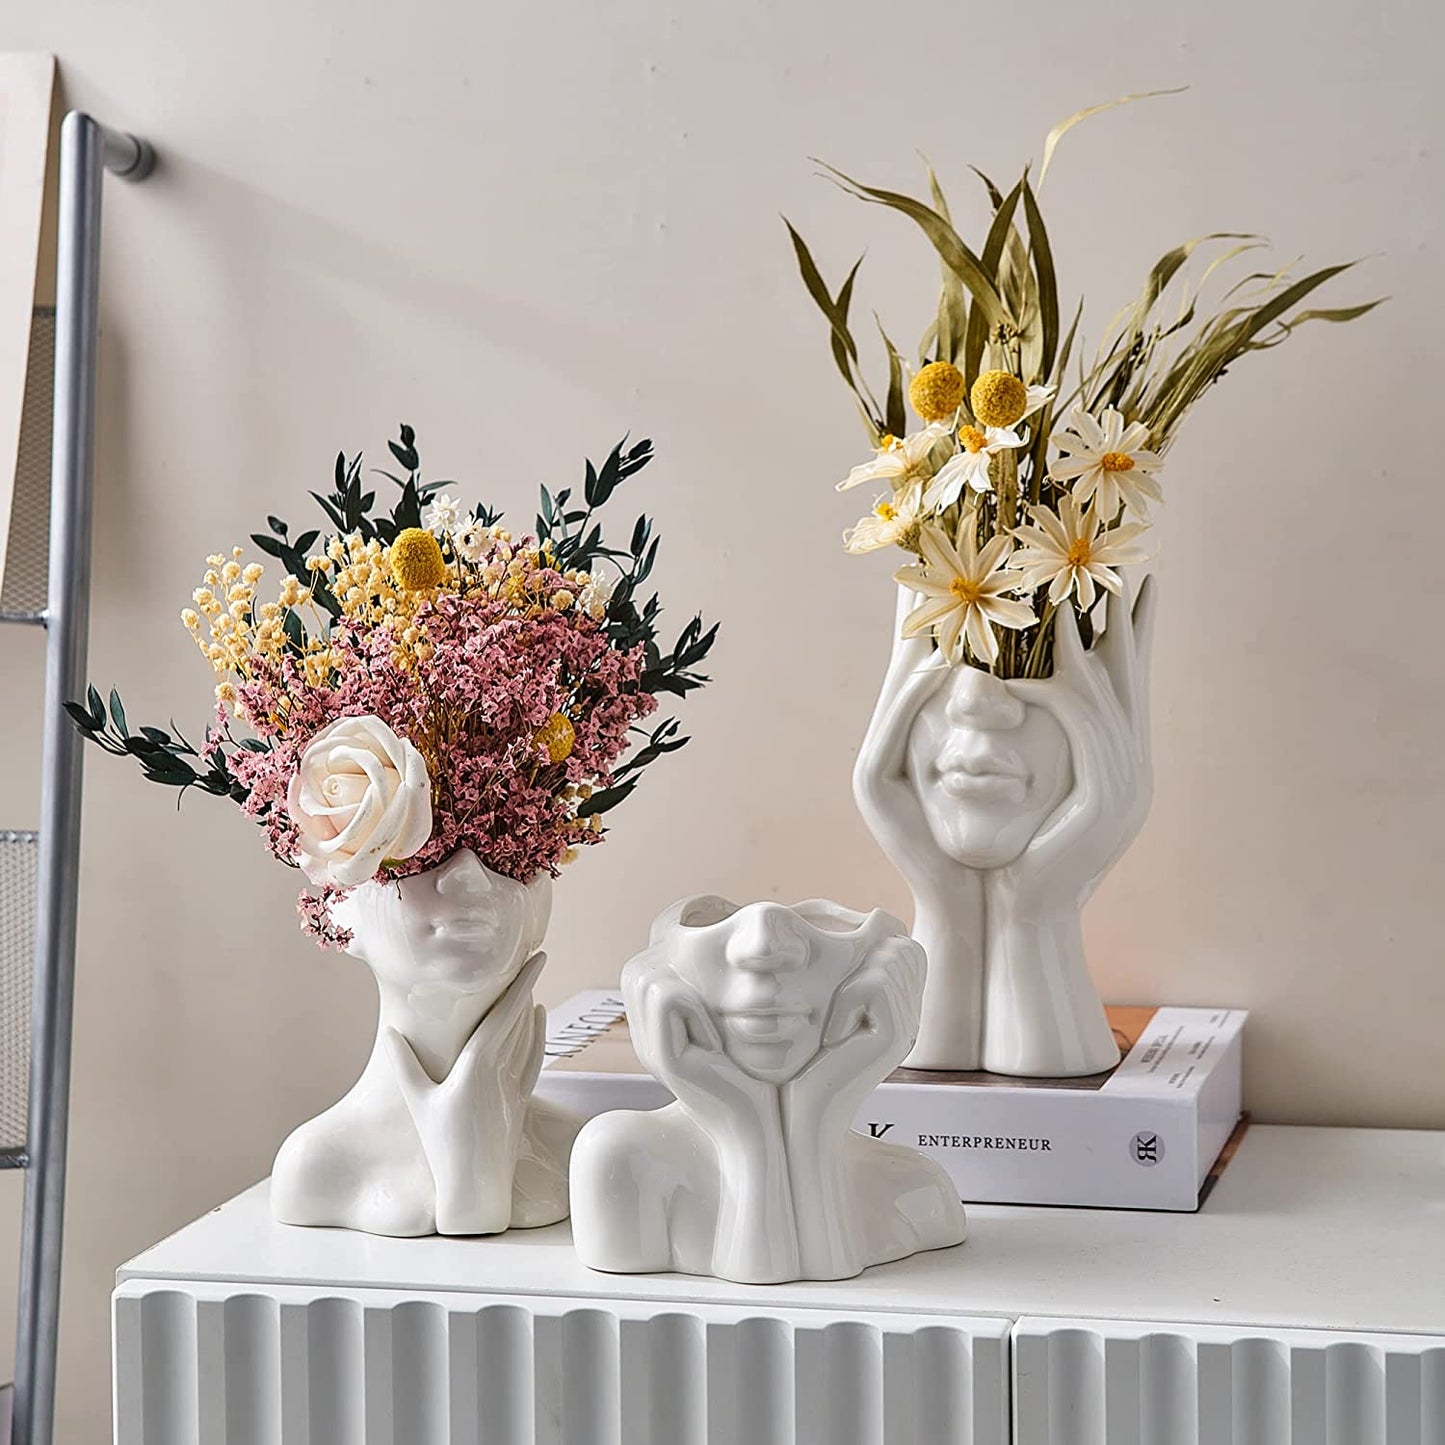 Ceramic Face Vase, White Flower Vase for Decor, 5.3" W x 4.7" H Modern Decorative Vase Centerpiece for Table Shelf Living Room Office Bedroom